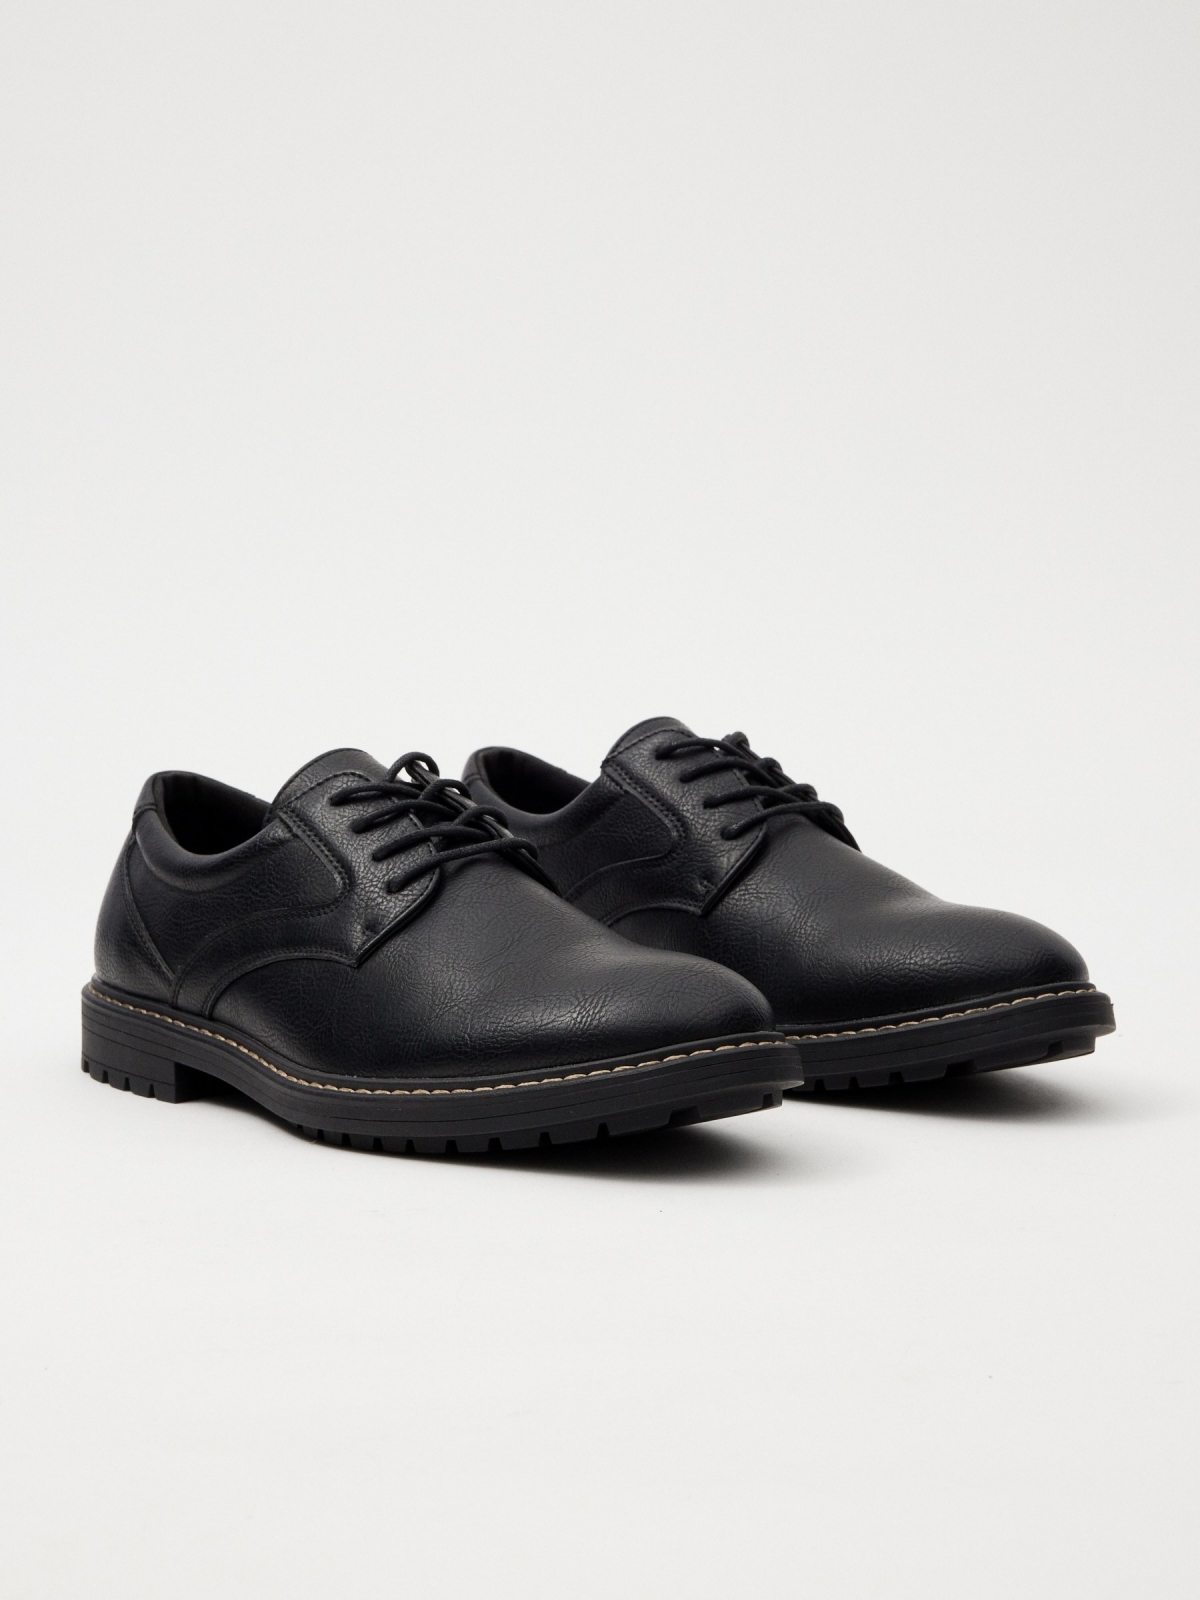 Classic basic leatherette shoe black 45º front view